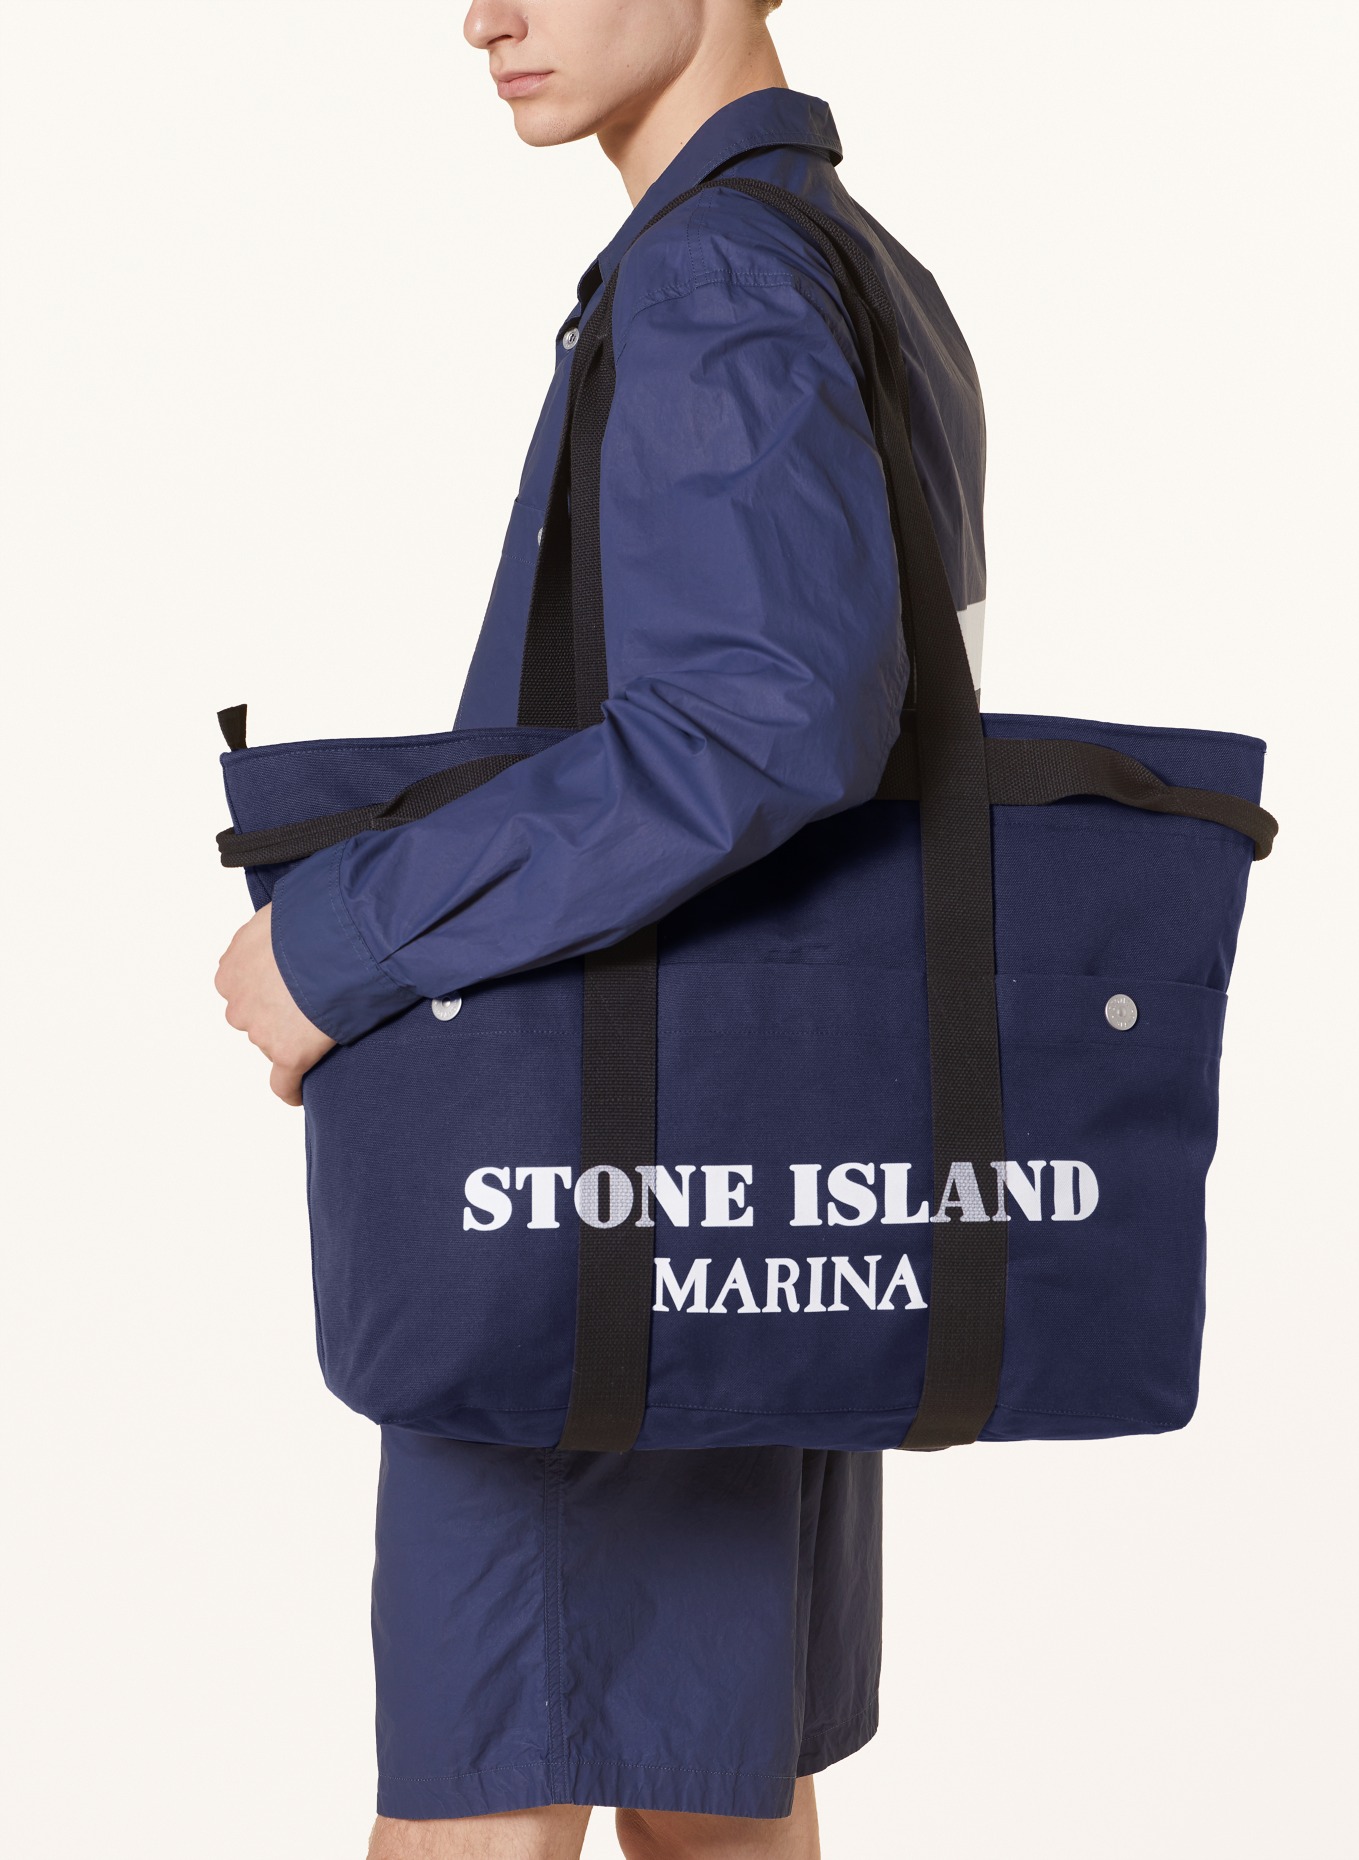 STONE ISLAND Strandtasche MARINA, Farbe: DUNKELBLAU/ SCHWARZ/ WEISS (Bild 4)